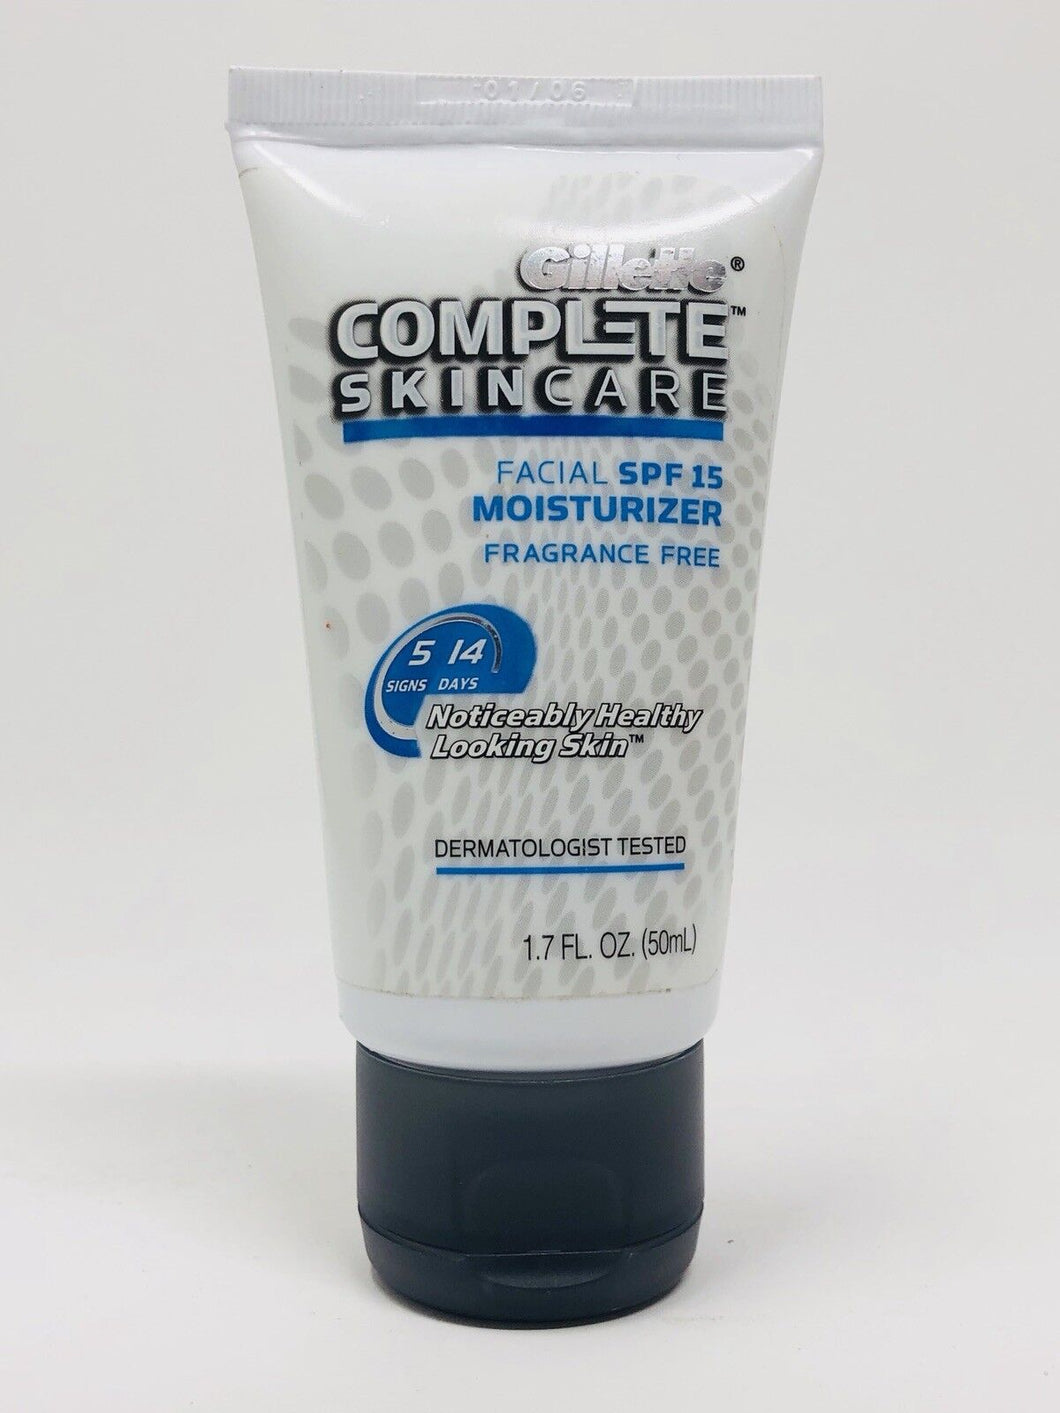 Gillette Complete Skin Care Facial SPF 15 Moisturizer, Fragrance Free